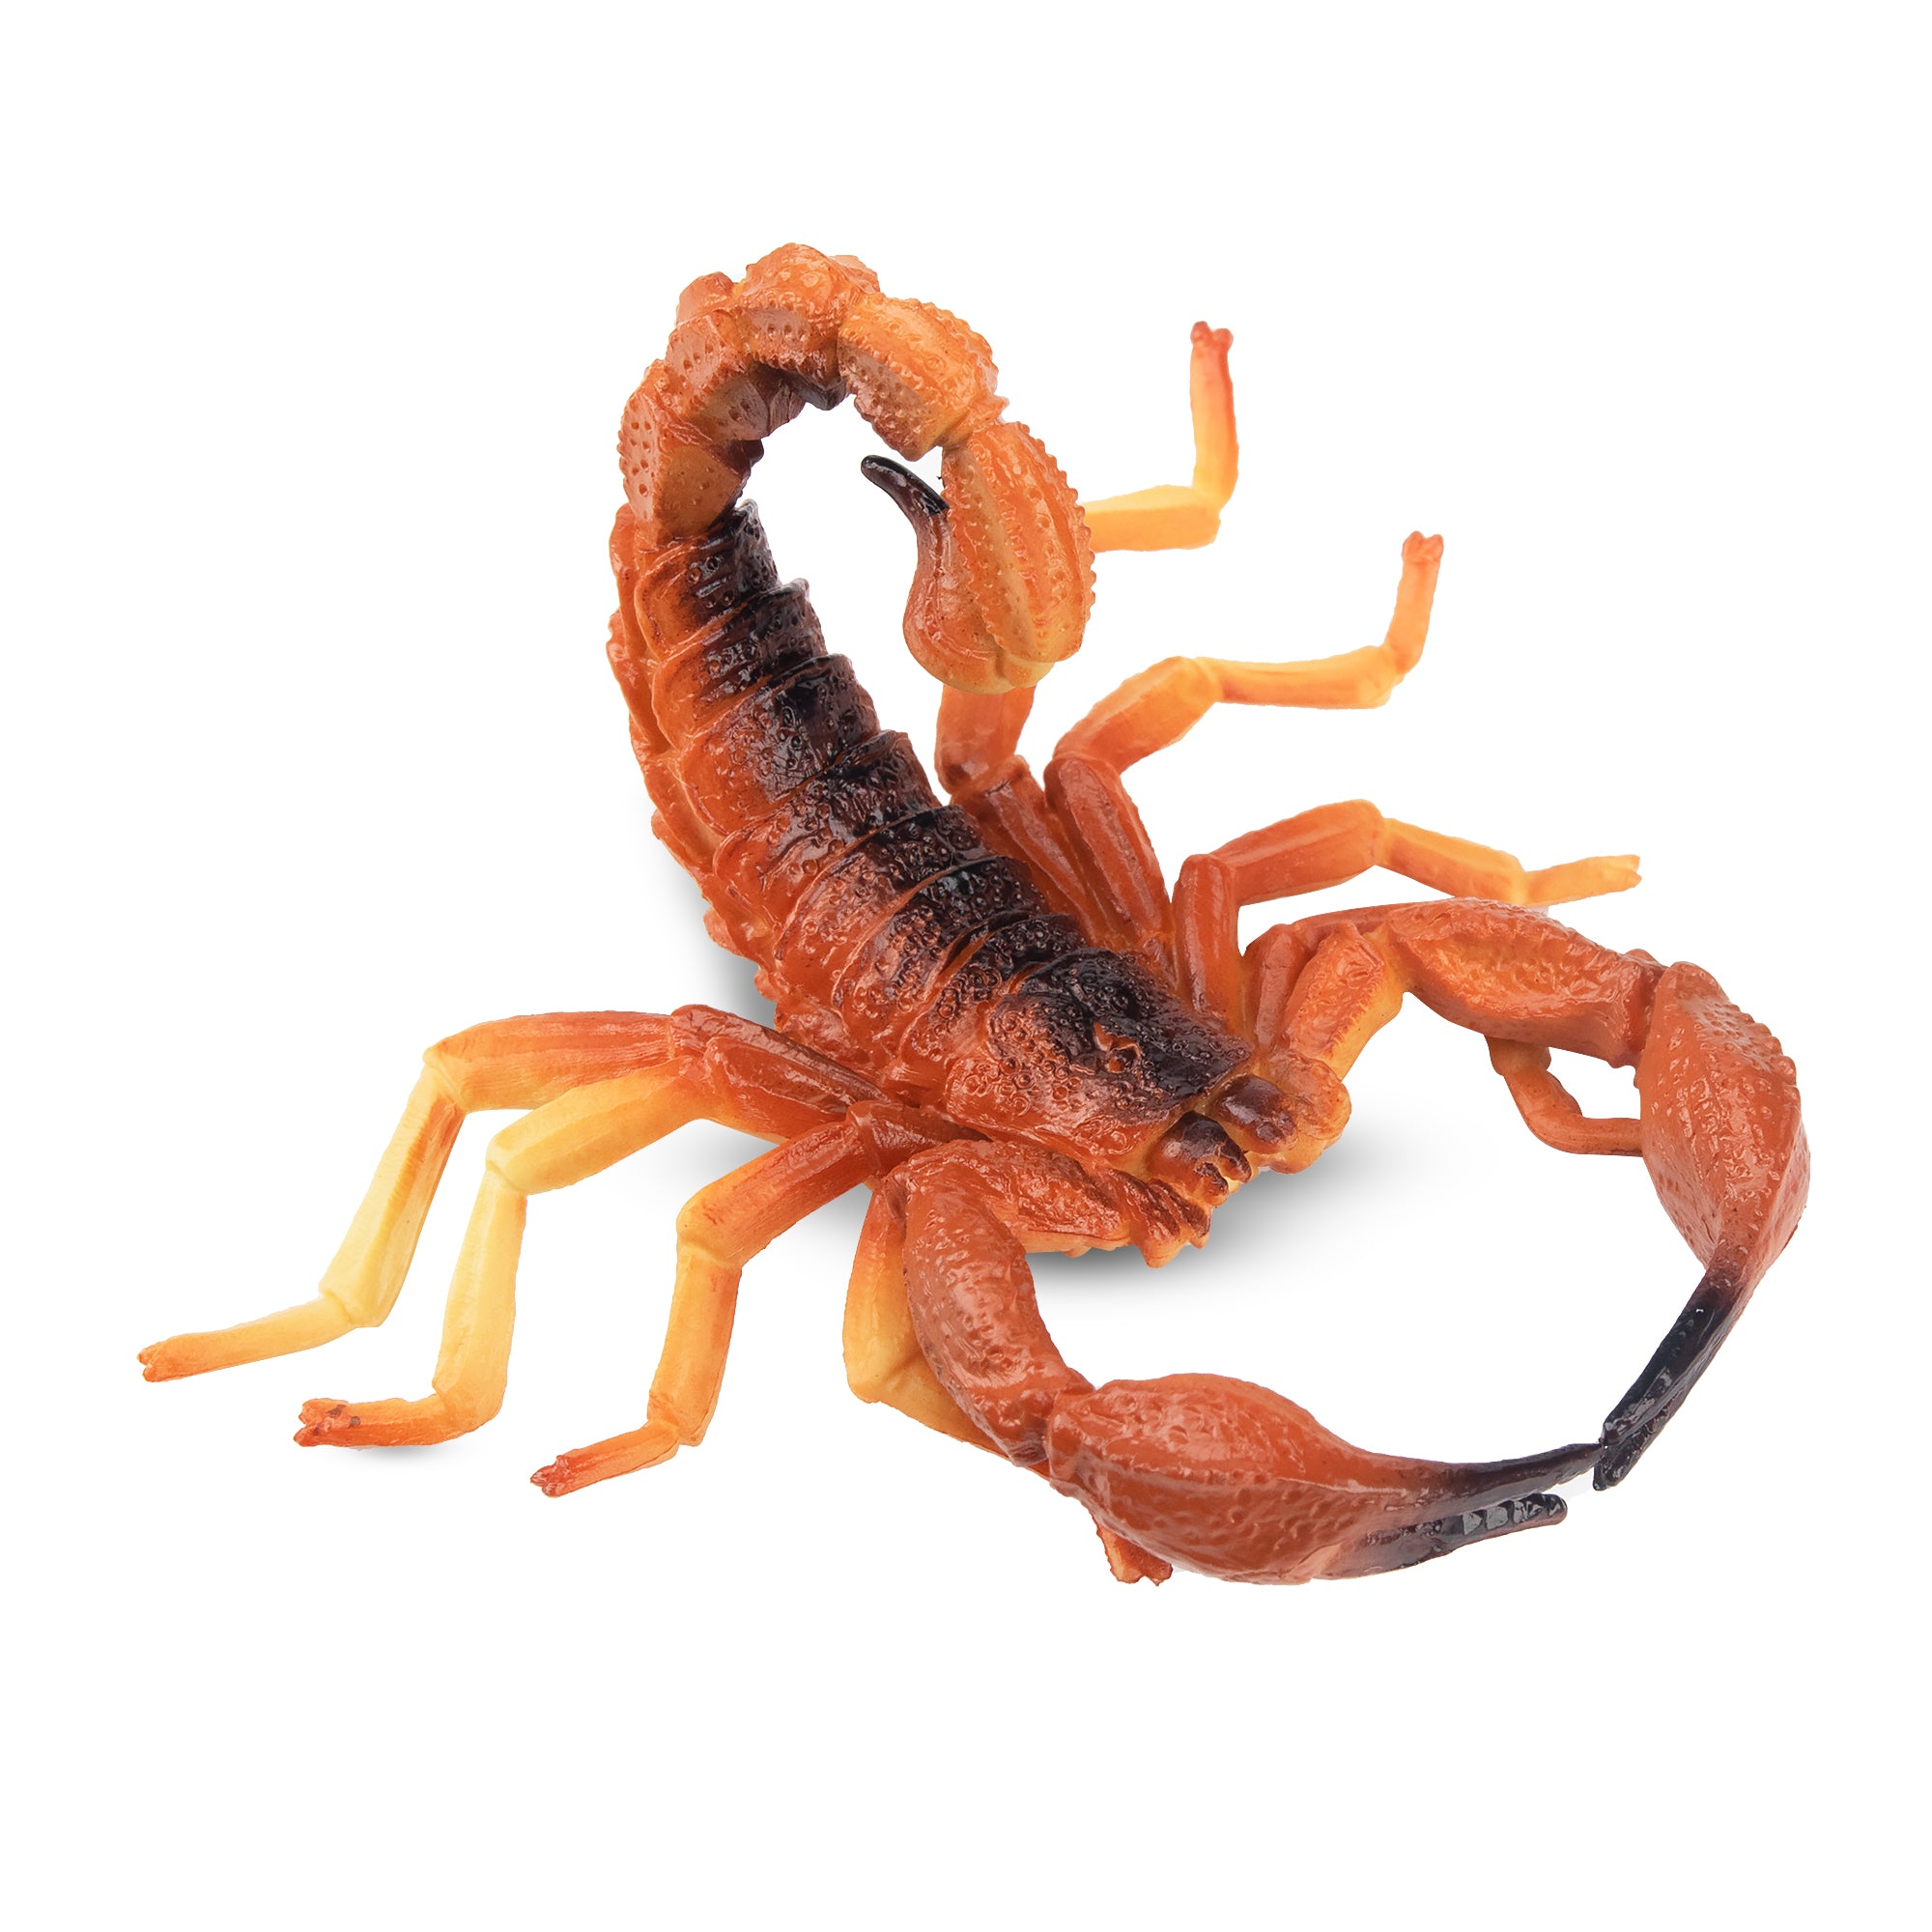 Toymany Red Scorpion Figurine Toy-3